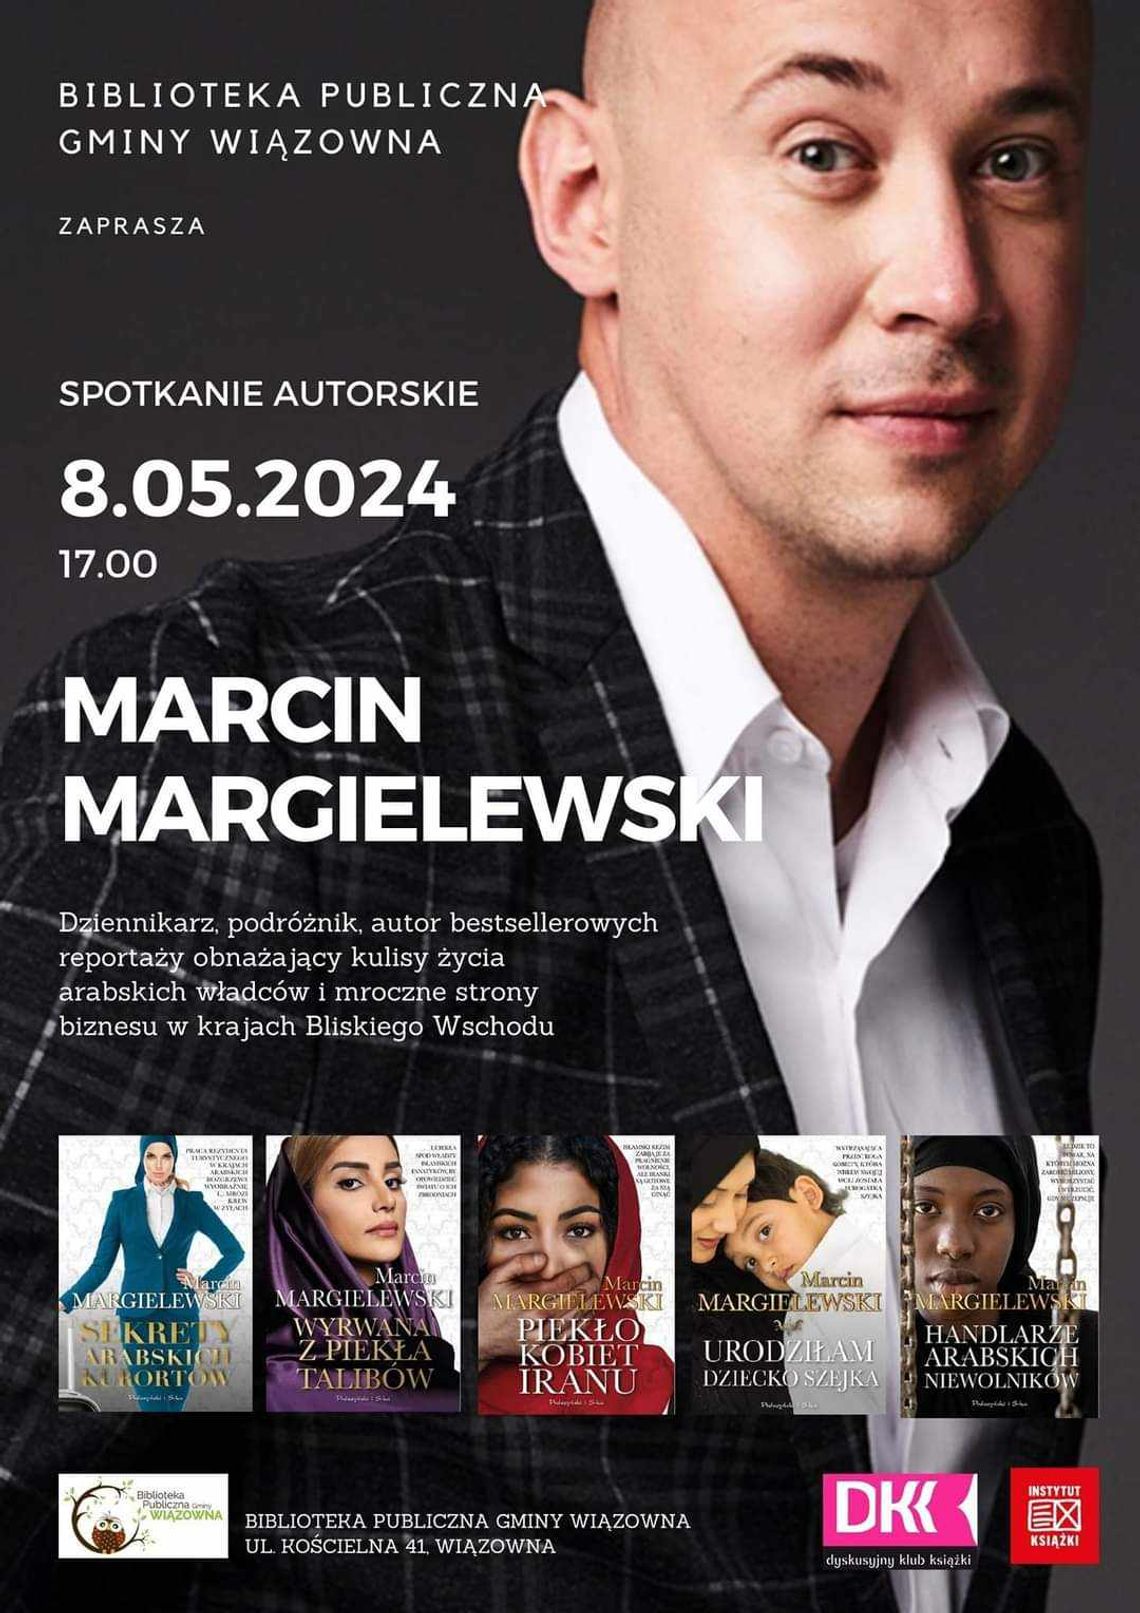 Spotkanie autorskie z Marcinem Margielewskim